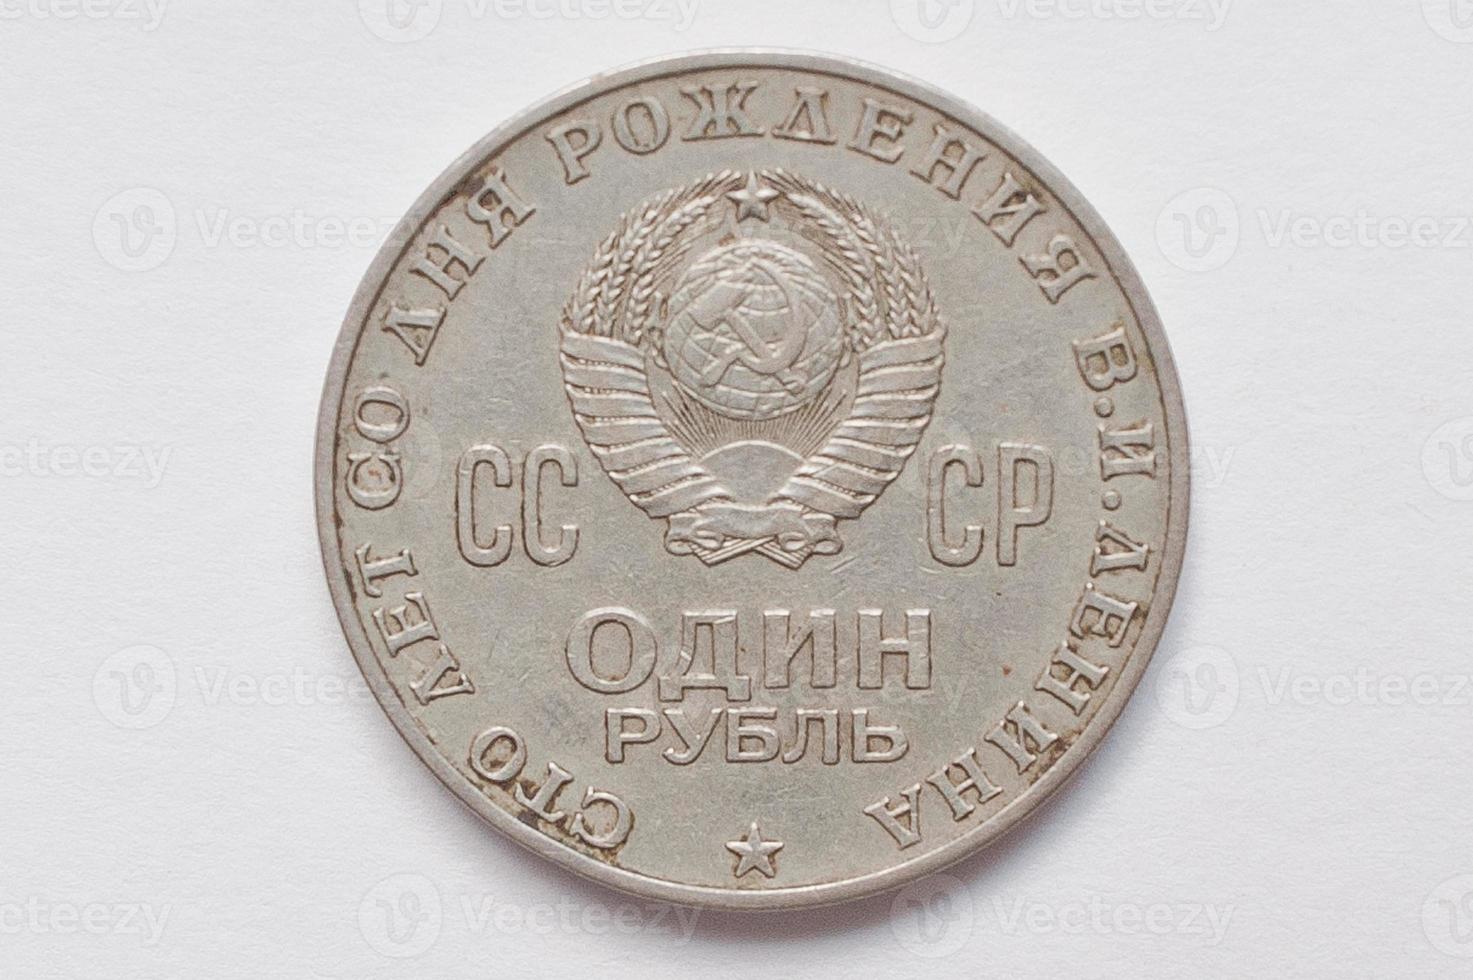 pièce commémorative 1 rouble urss de 1970, montre 100 ans depuis la naissance de lenin photo